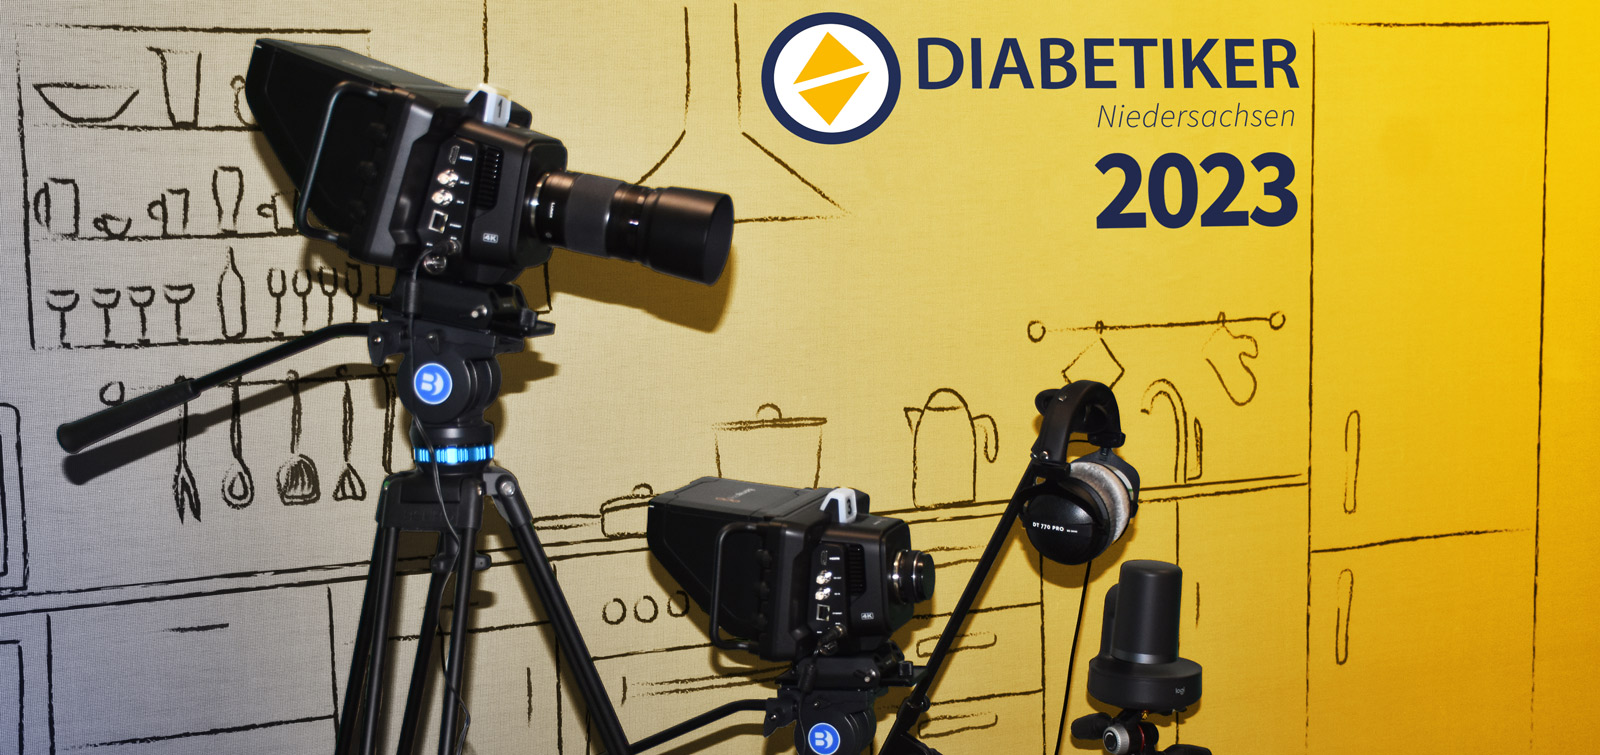 Professionelle Kameras vor einer Rückwand mit dem neuen Logo der Diabetiker Niedersachsen. Darunter steht "2023"